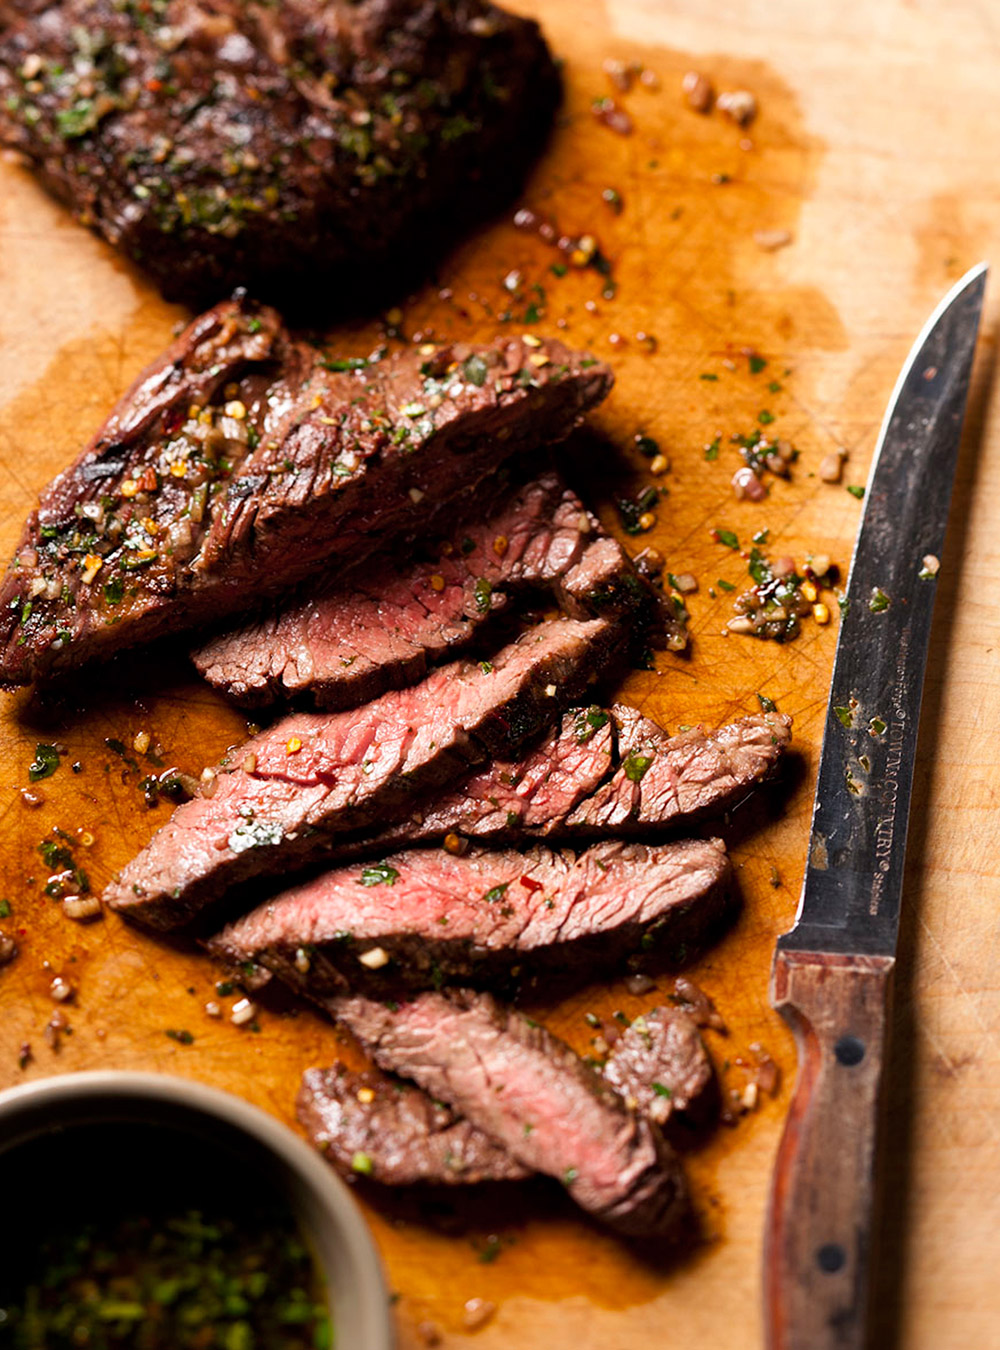 Recette de boeuf: tout sur les rôtis ou les steaks de boeuf  page 9 ...